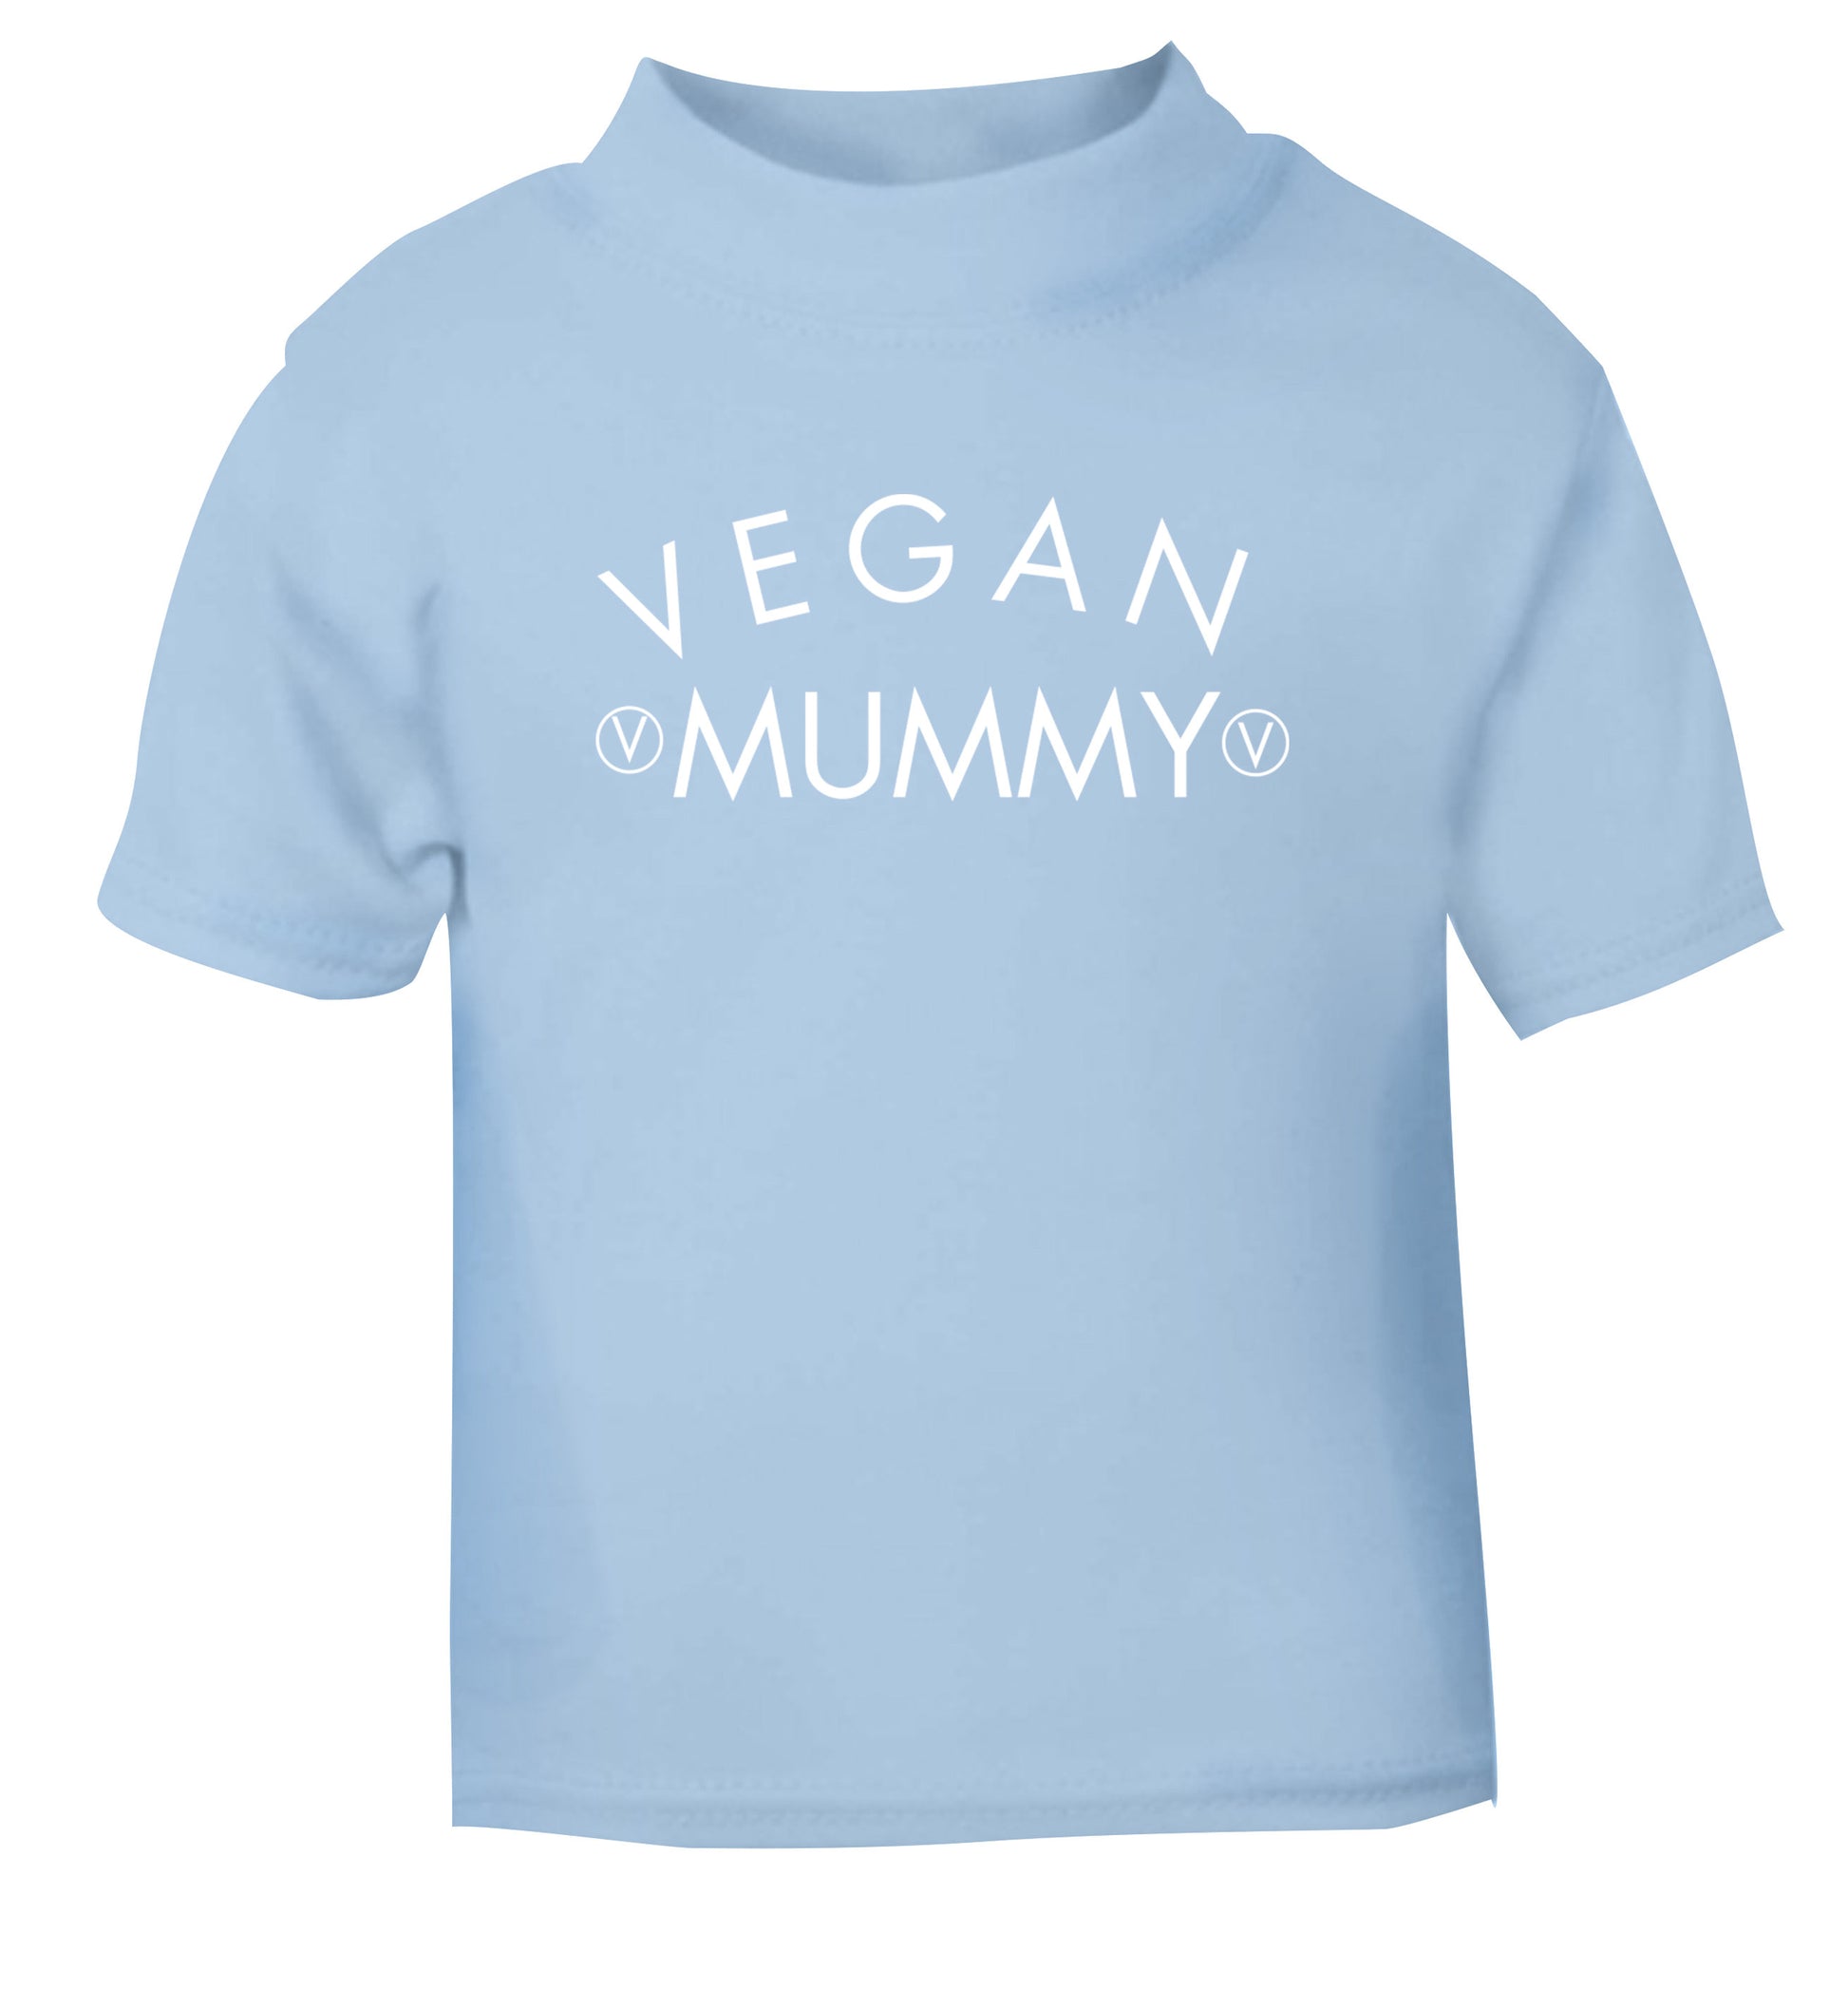 Vegan mummy light blue Baby Toddler Tshirt 2 Years